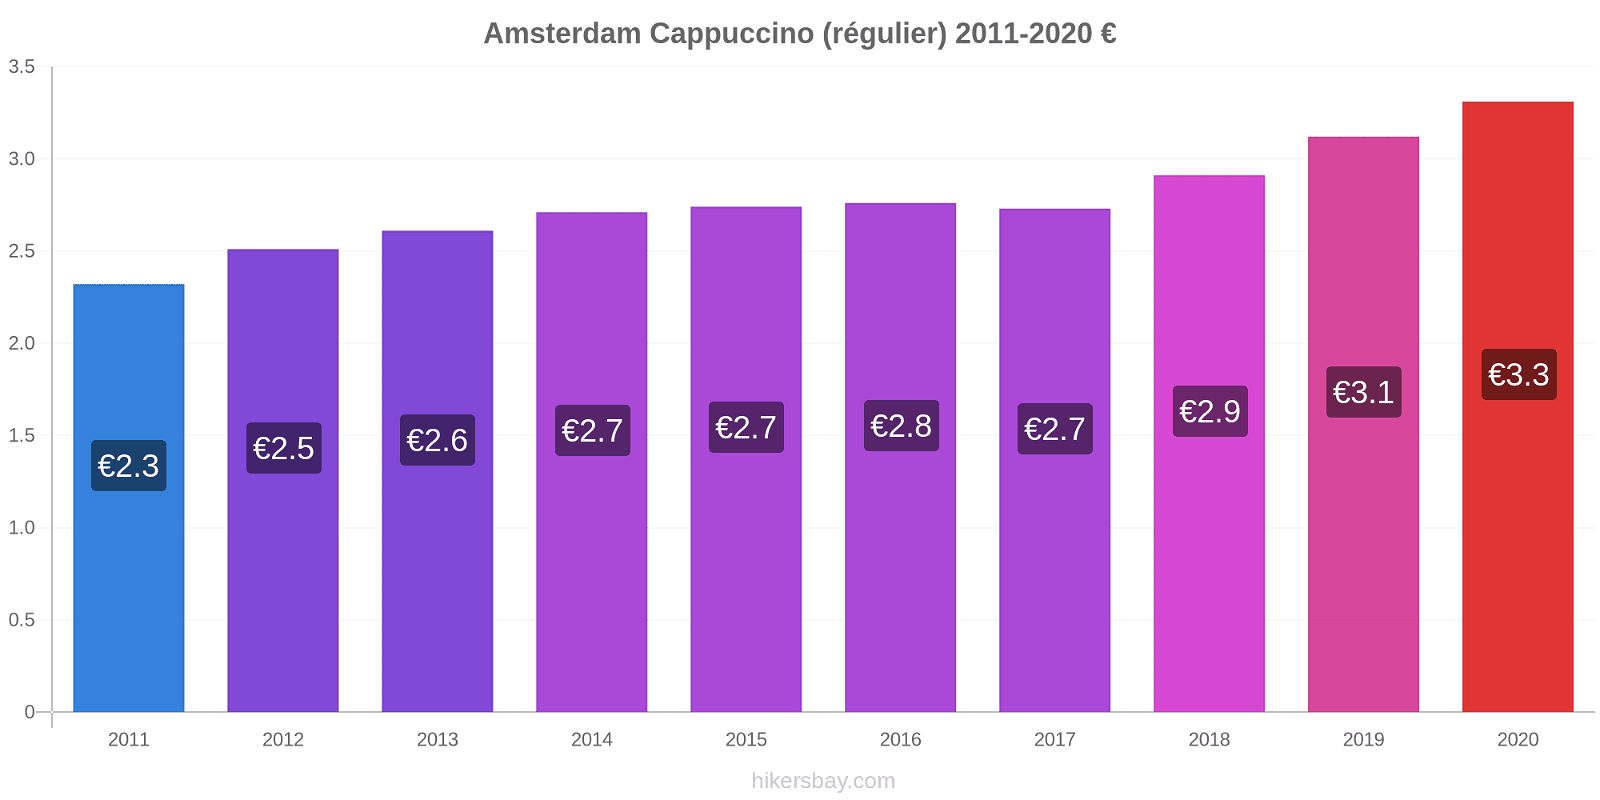 Amsterdam changements de prix Cappuccino (régulier) hikersbay.com